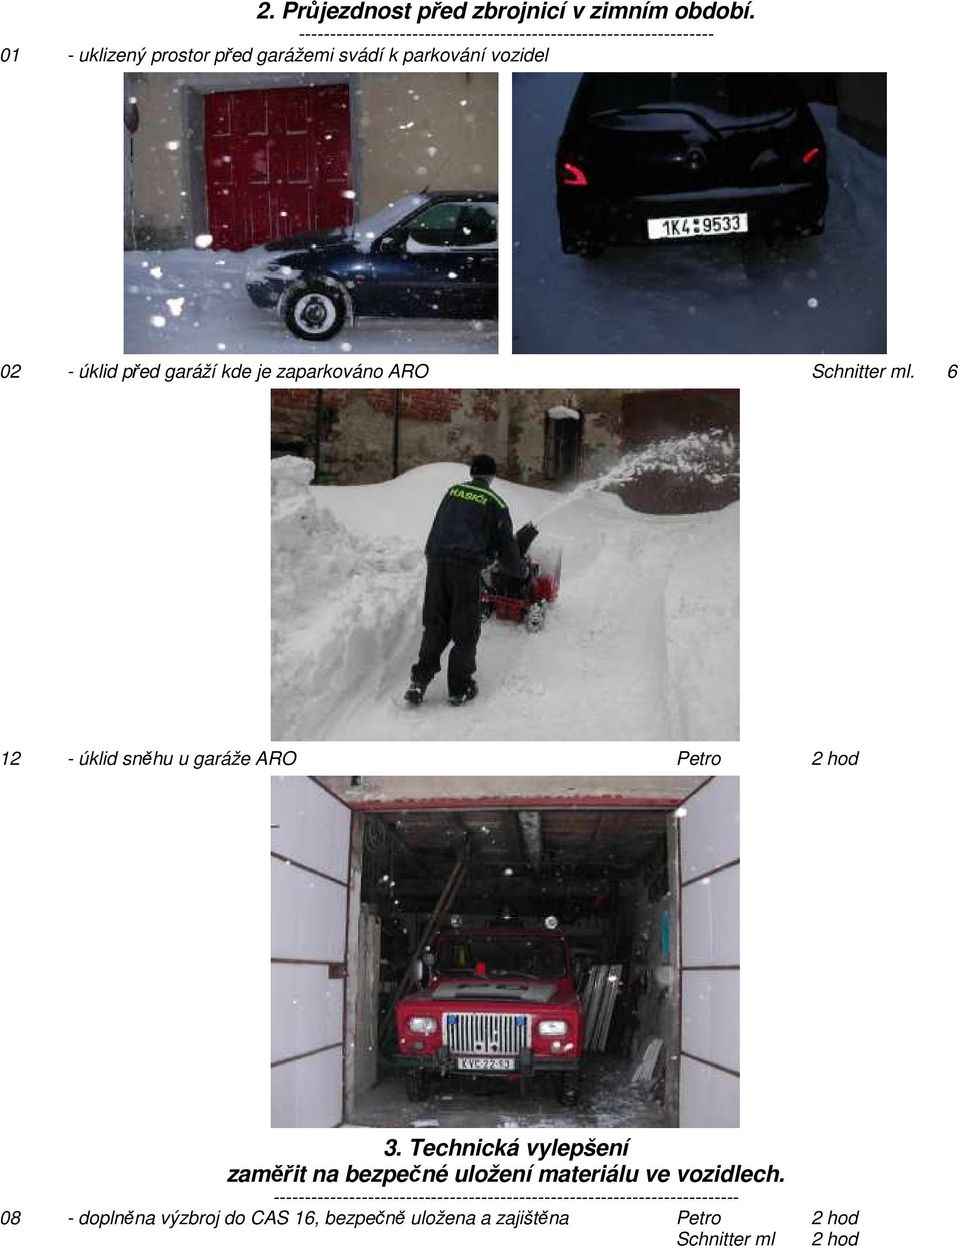 02 - úklid před garáží kde je zaparkováno ARO Schnitter ml. 6 12 - úklid sněhu u garáže ARO Petro 2 hod 3.